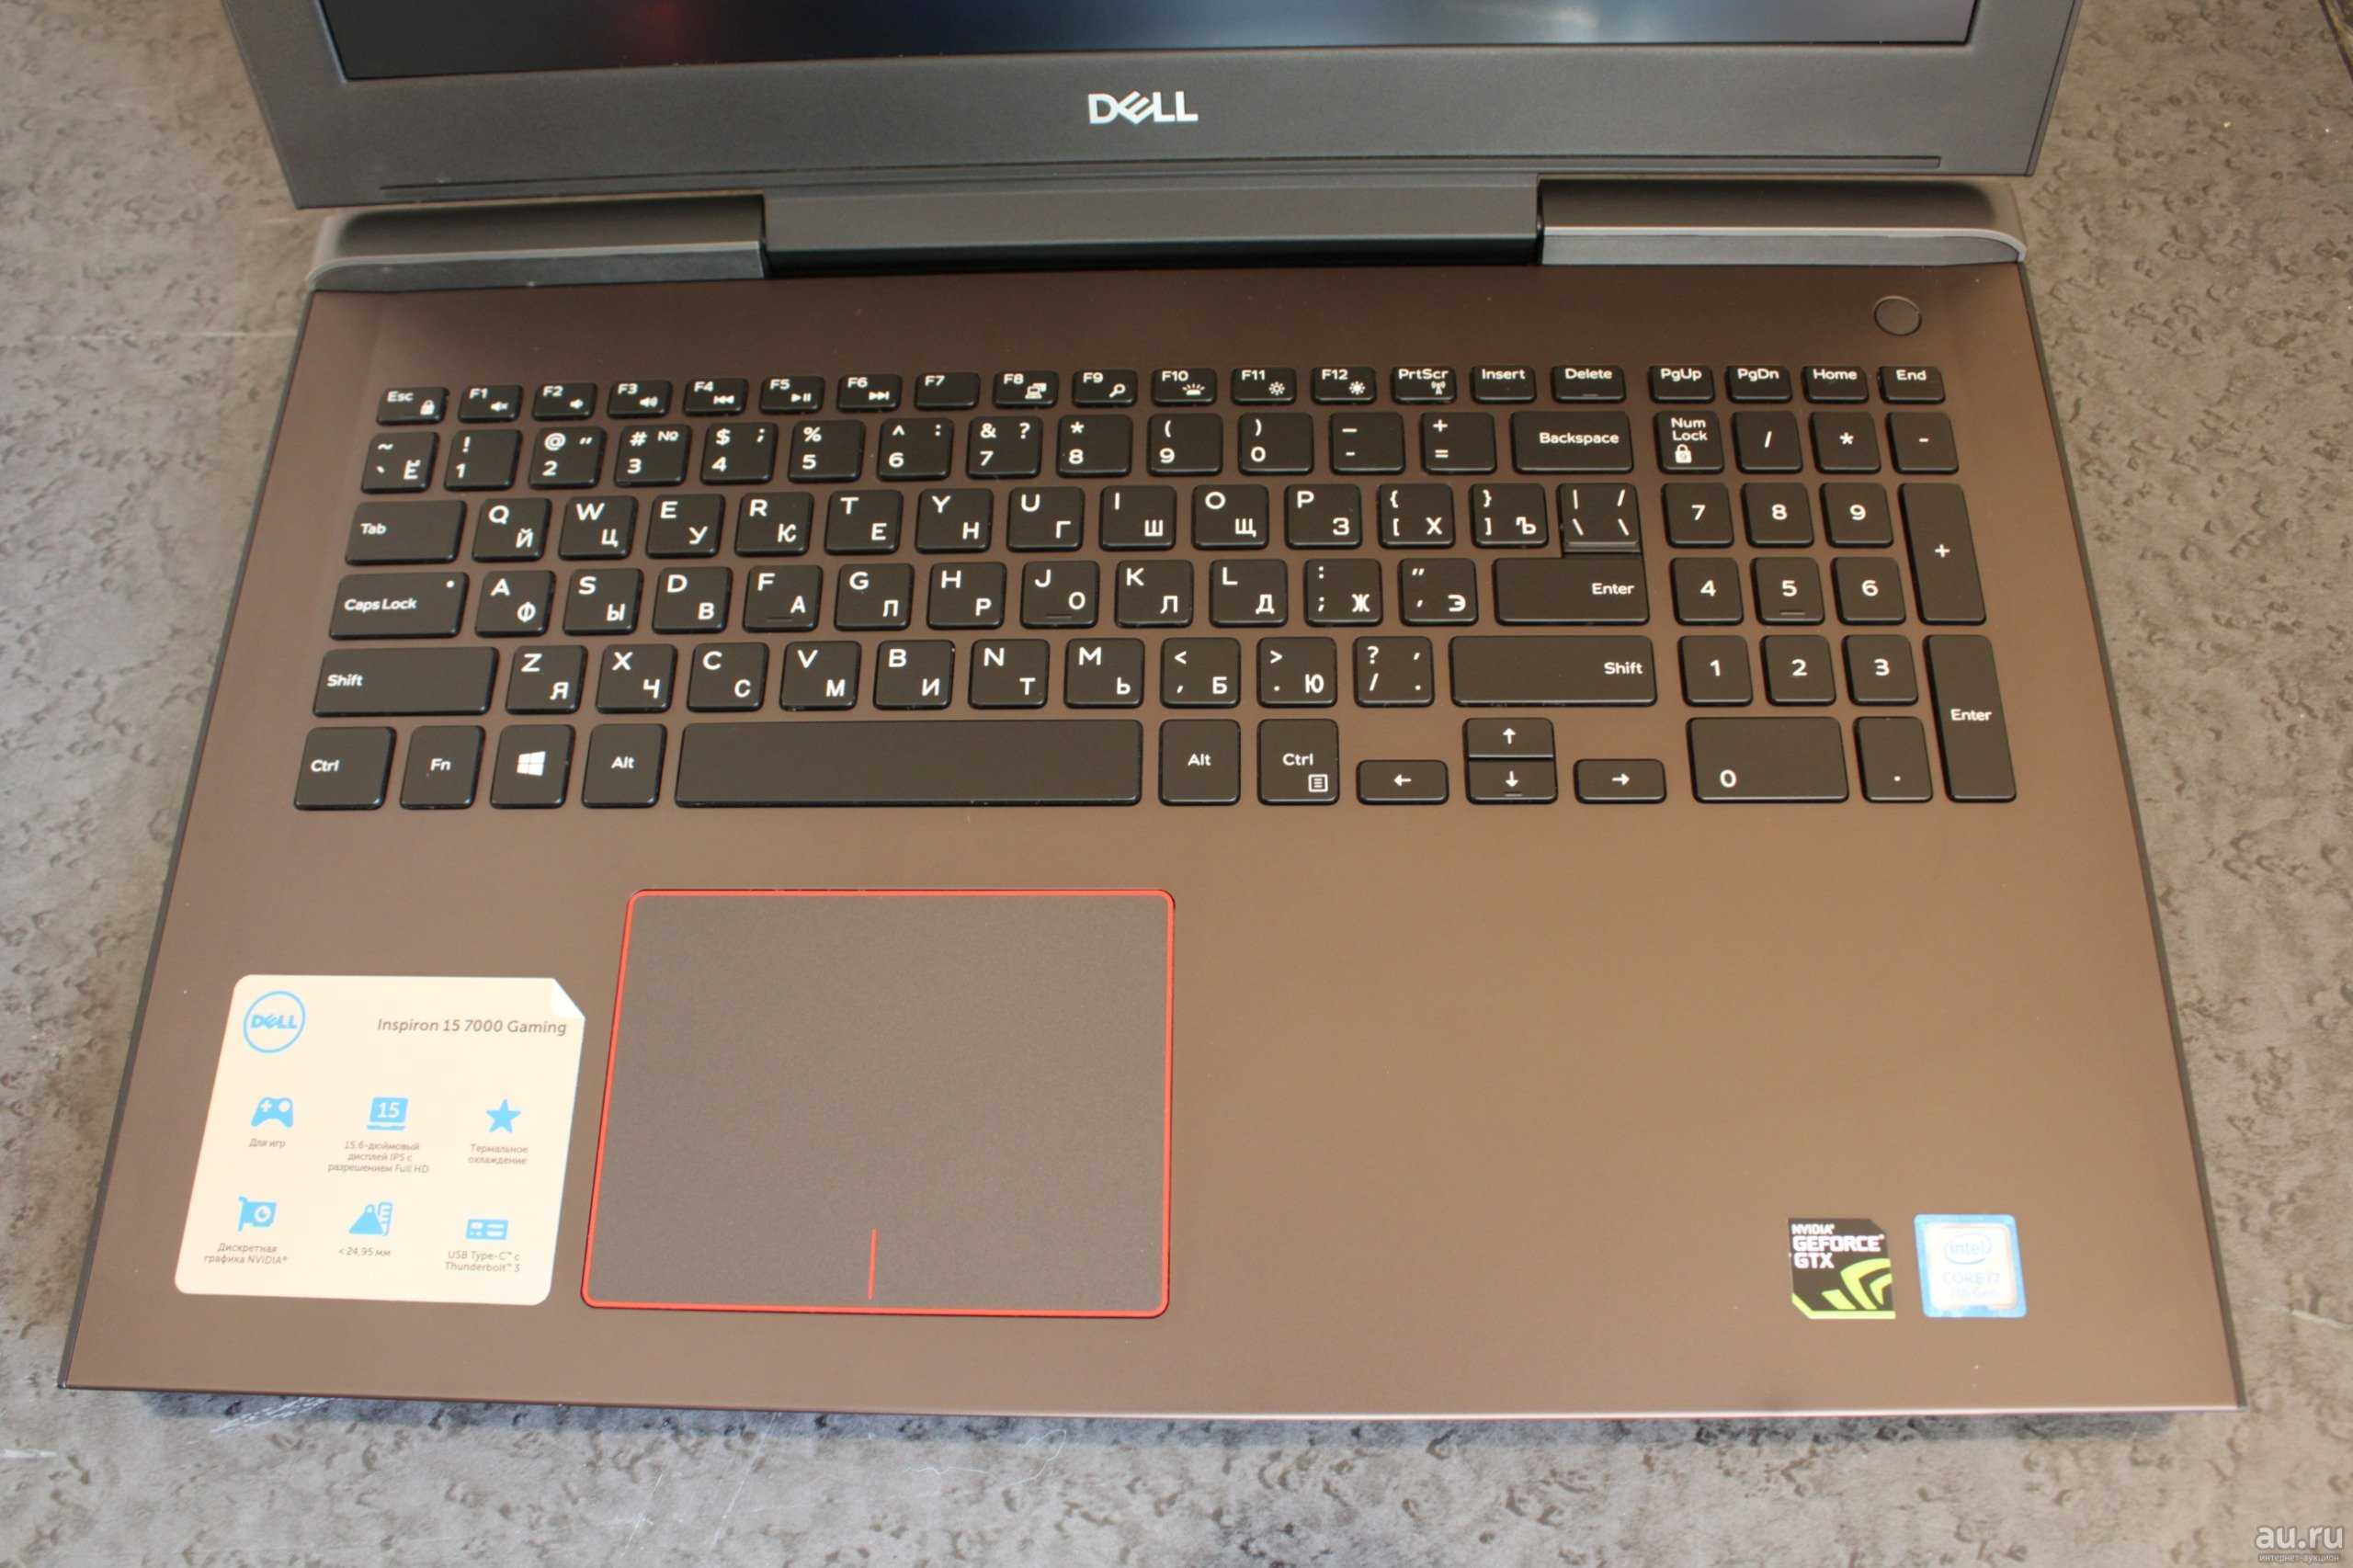 Ноутбук Dell Inspiron 7577 (i7577-5241BLK-PUS) - подробные характеристики обзоры видео фото Цены в интернет-магазинах где можно купить ноутбук Dell Inspiron 7577 (i7577-5241BLK-PUS)